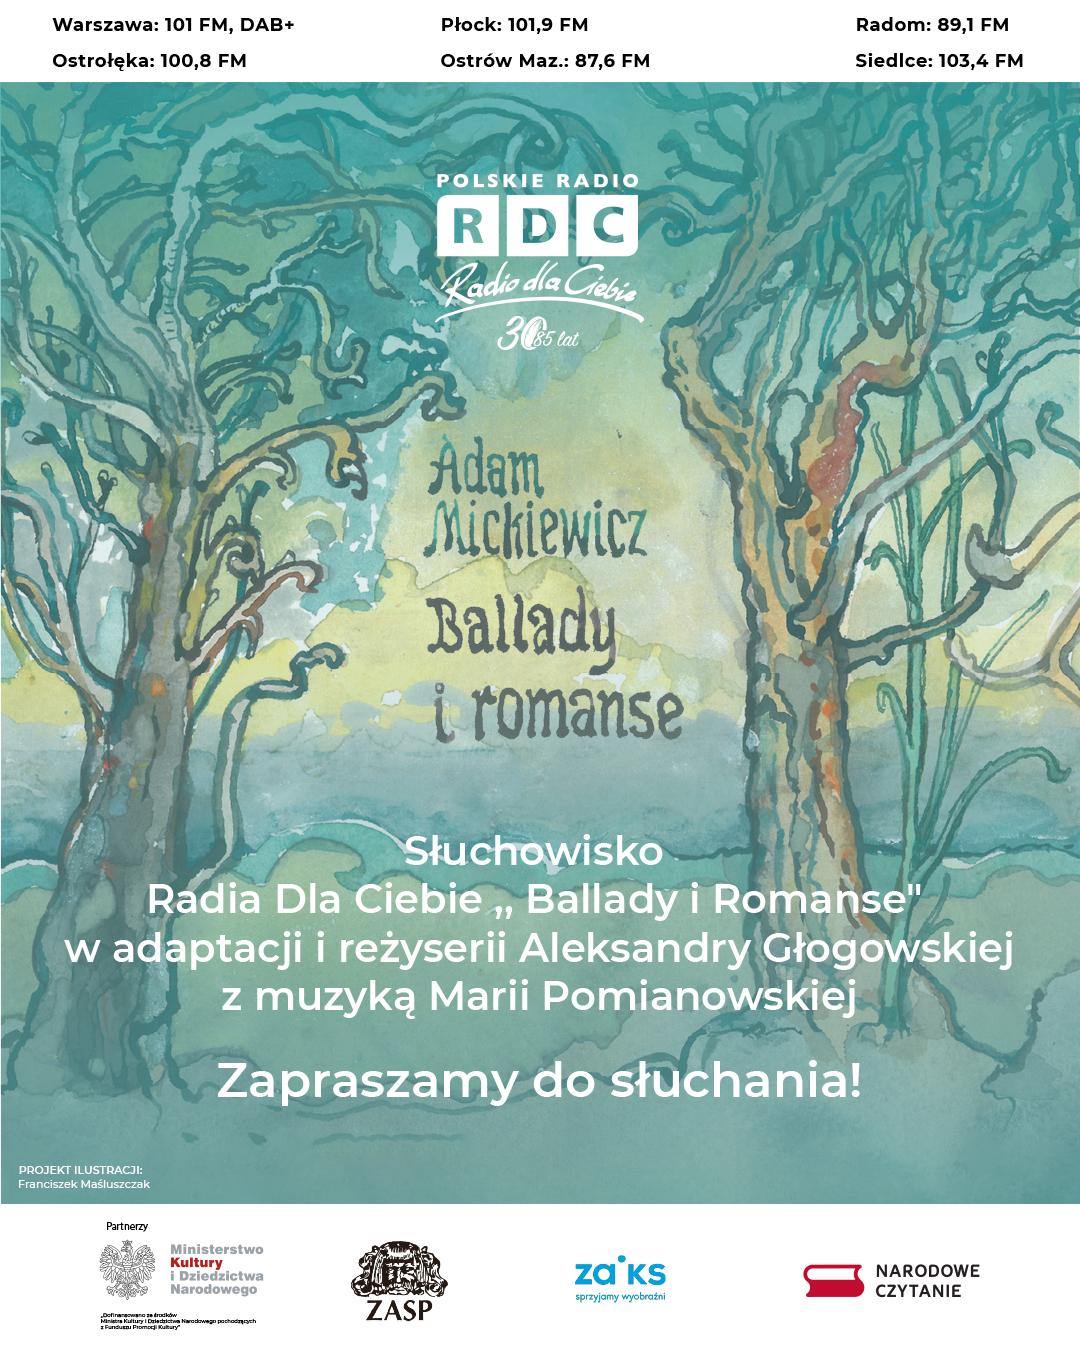 Adam Mickiewicz 'Ballady i romanse', słuchowisko RDC